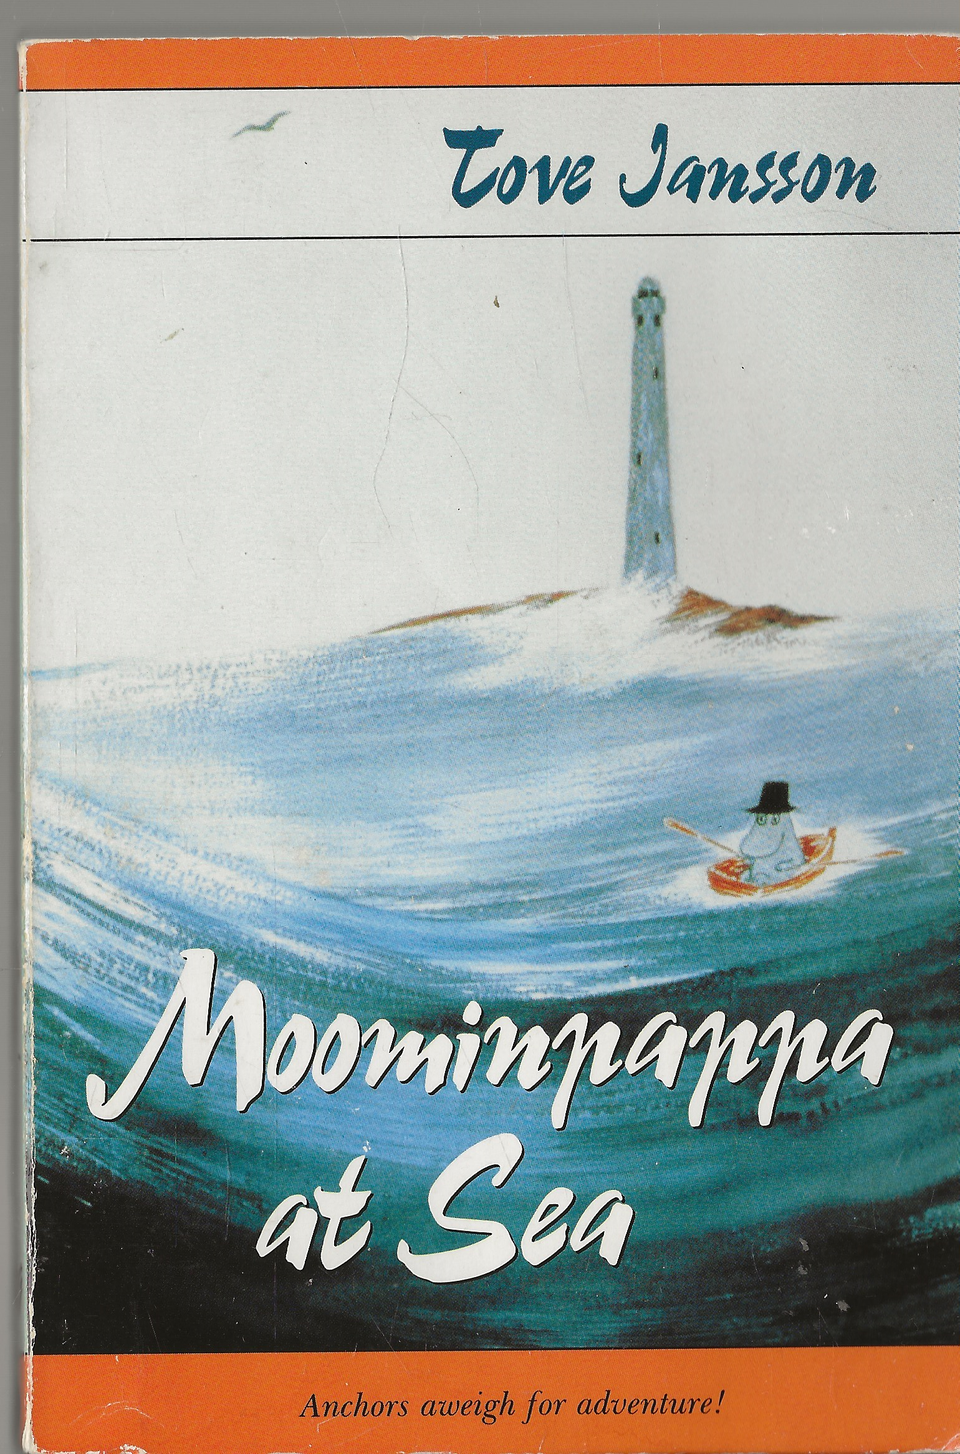 Tove Jansson: Moominpappa at Sea. Moominsummer Madness.